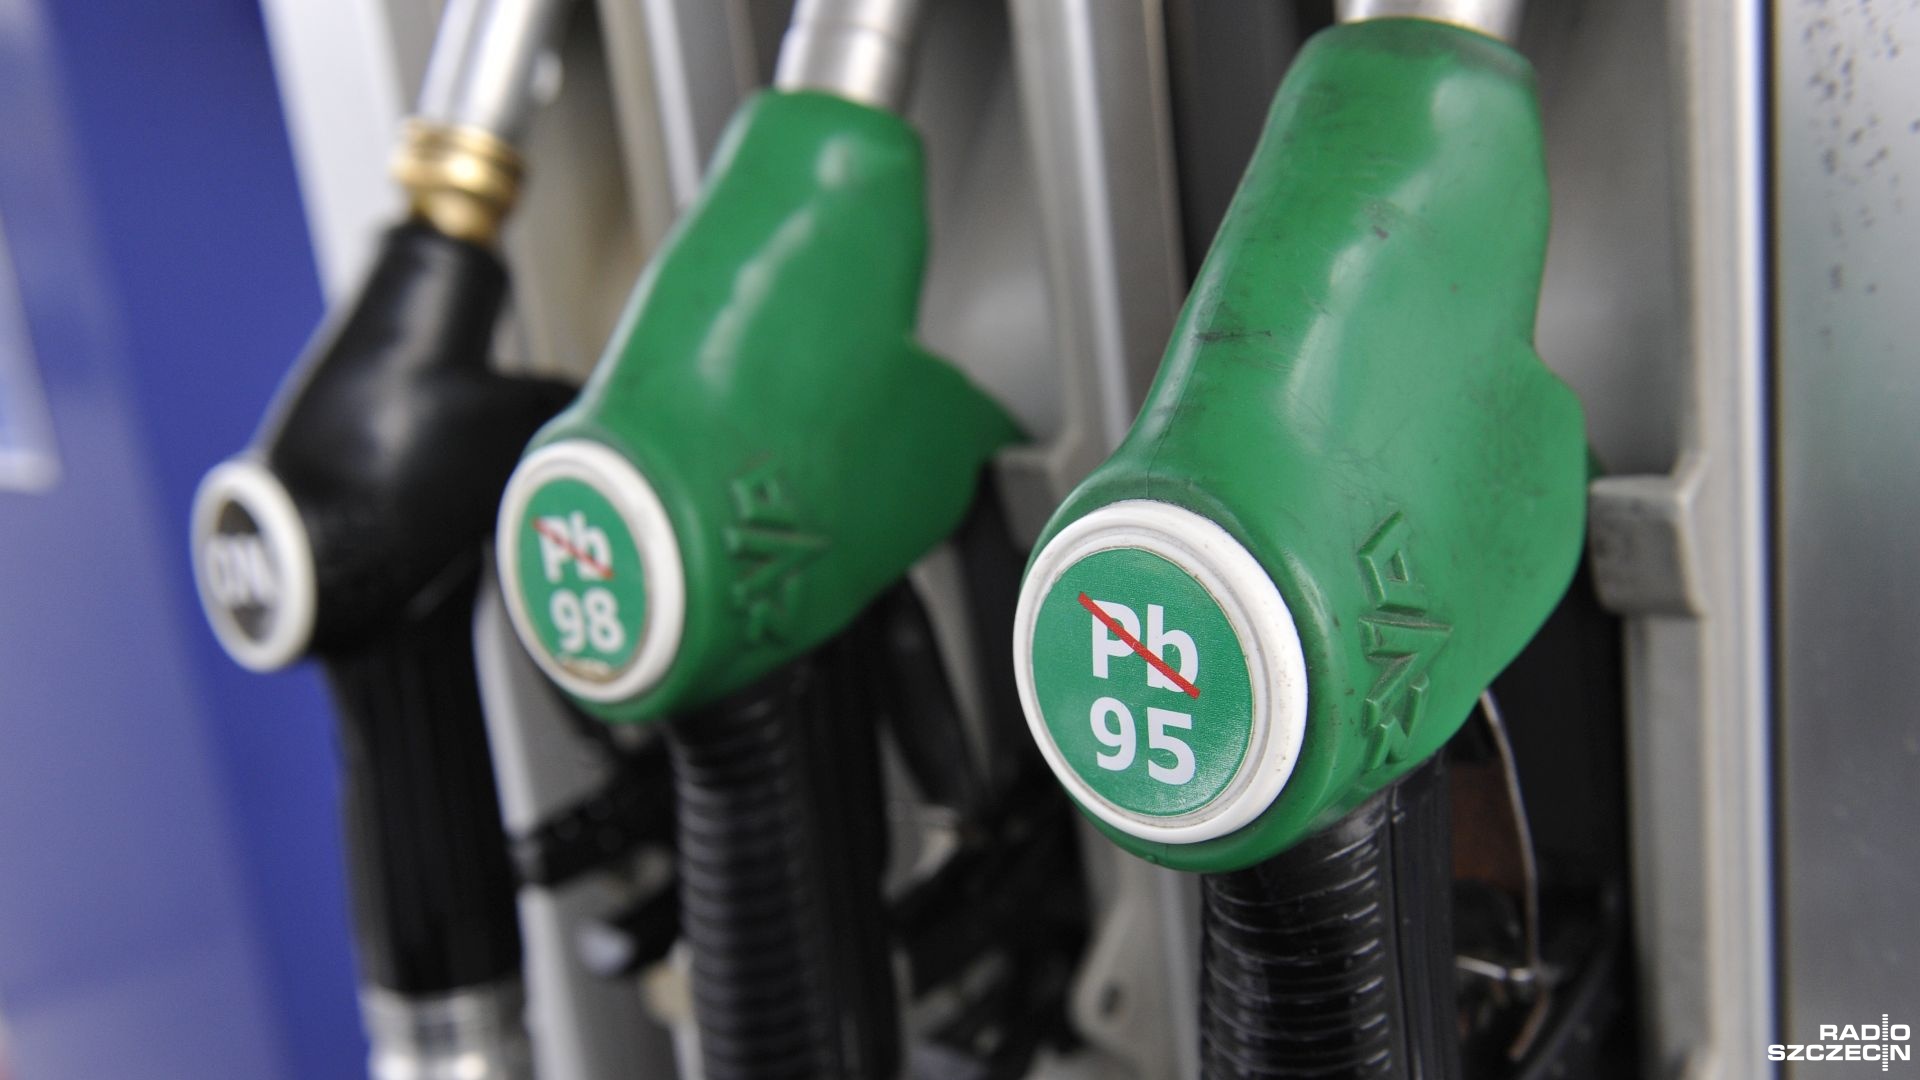 W perspektywie dwóch-trzech tygodni cena paliwa może spaść o co najmniej 30 groszy za litr - zapowiedział premier.